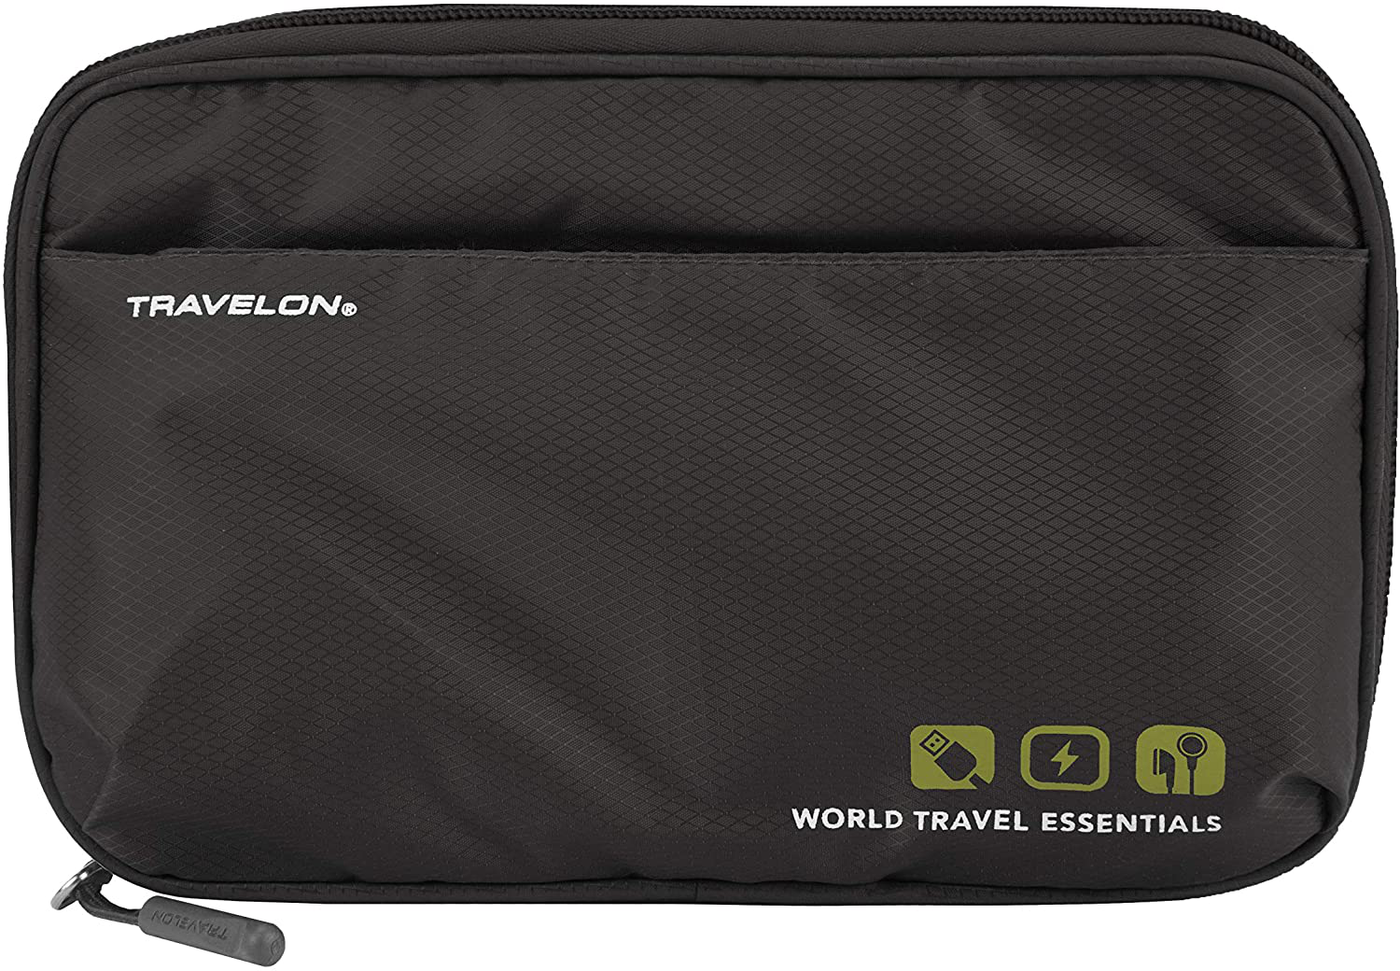 Travelon World Travel Essentials Tech Organizer, Black, One Size